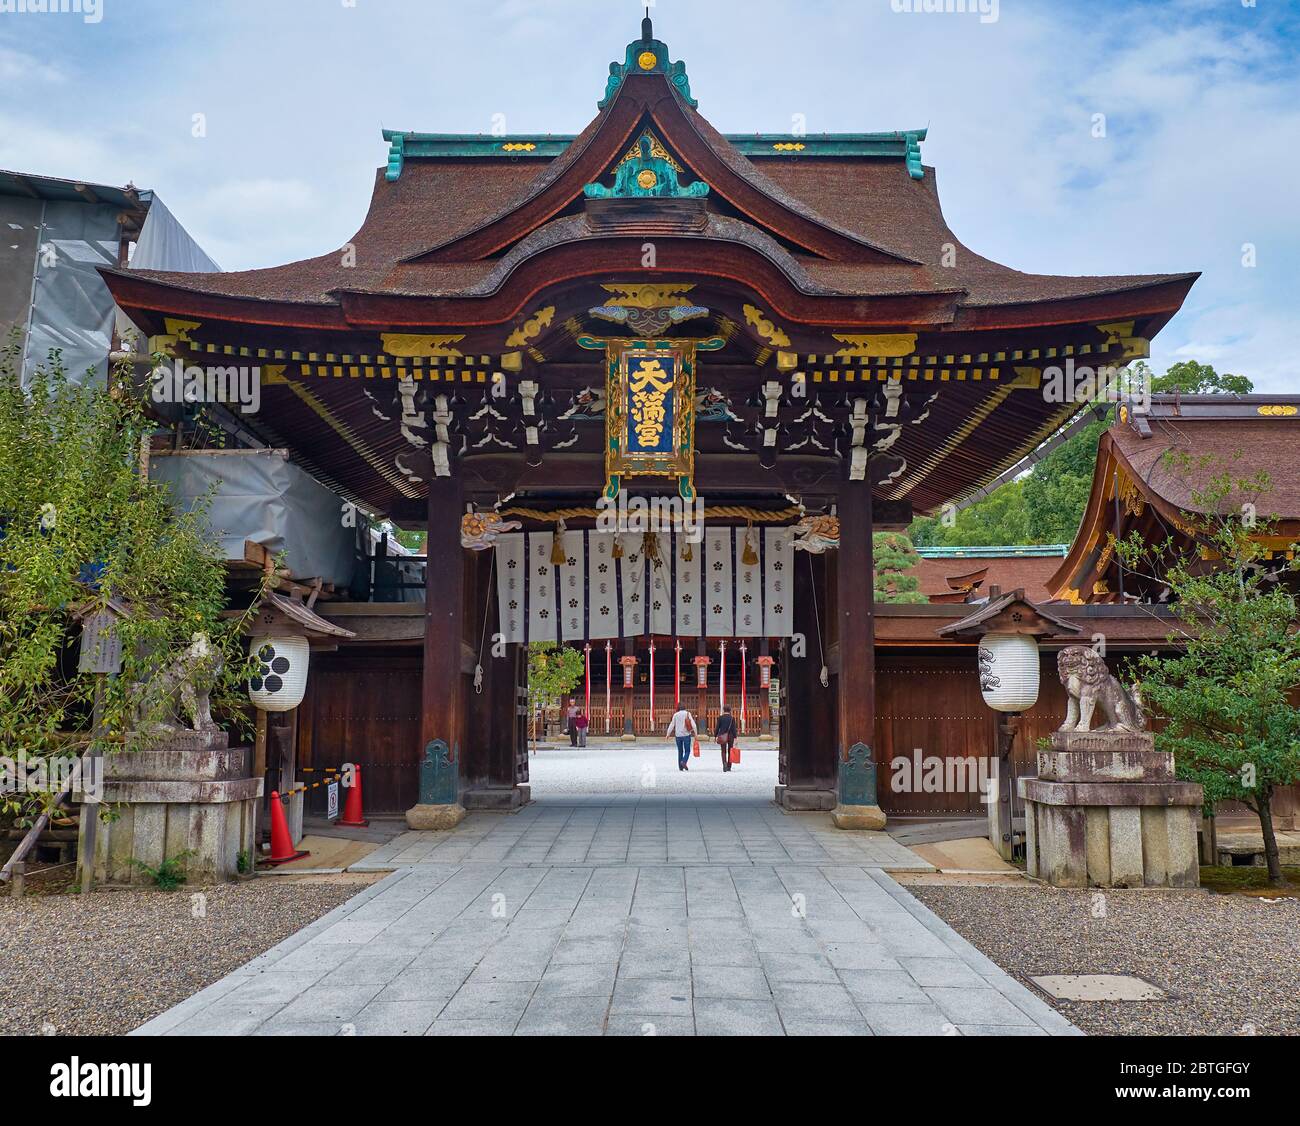 KYOTO, JAPON - 17 OCTOBRE 2019 : vue sur la porte traditionnelle chinoise (karamon ou karakado), la porte Sanko-mon au sanctuaire de Kitano Tenmangu. K Banque D'Images